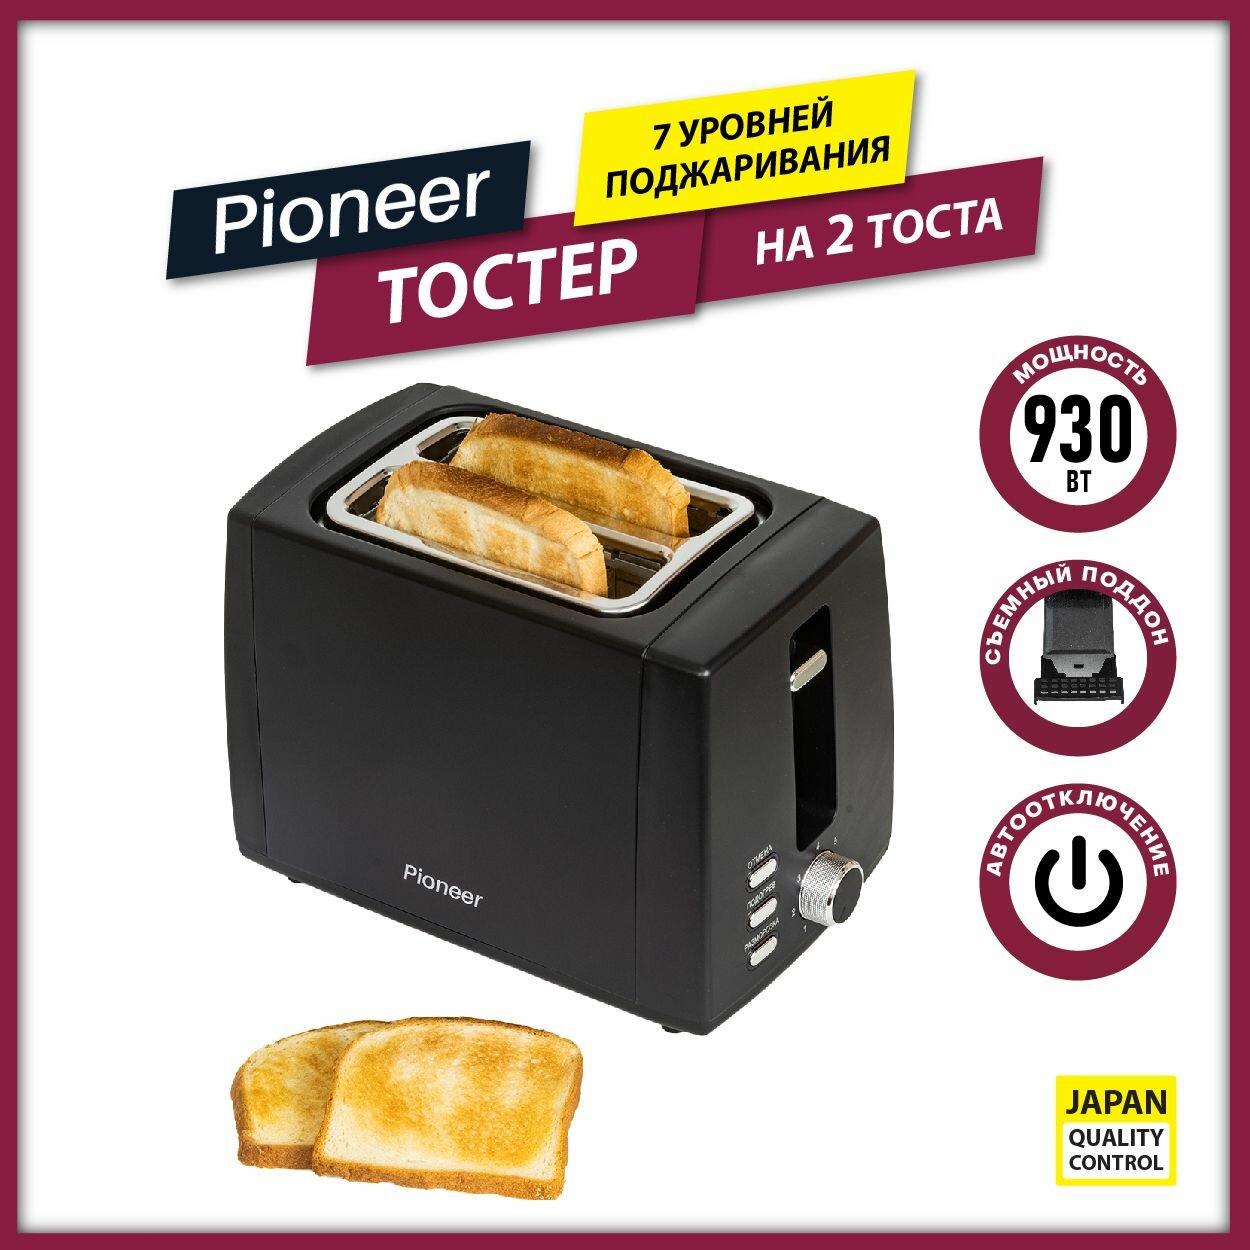 Тостер Pioneer TS155 на 2 тоста, 7 уровней поджаривания, подогрев, размораживание, автоотключение, 930 Вт